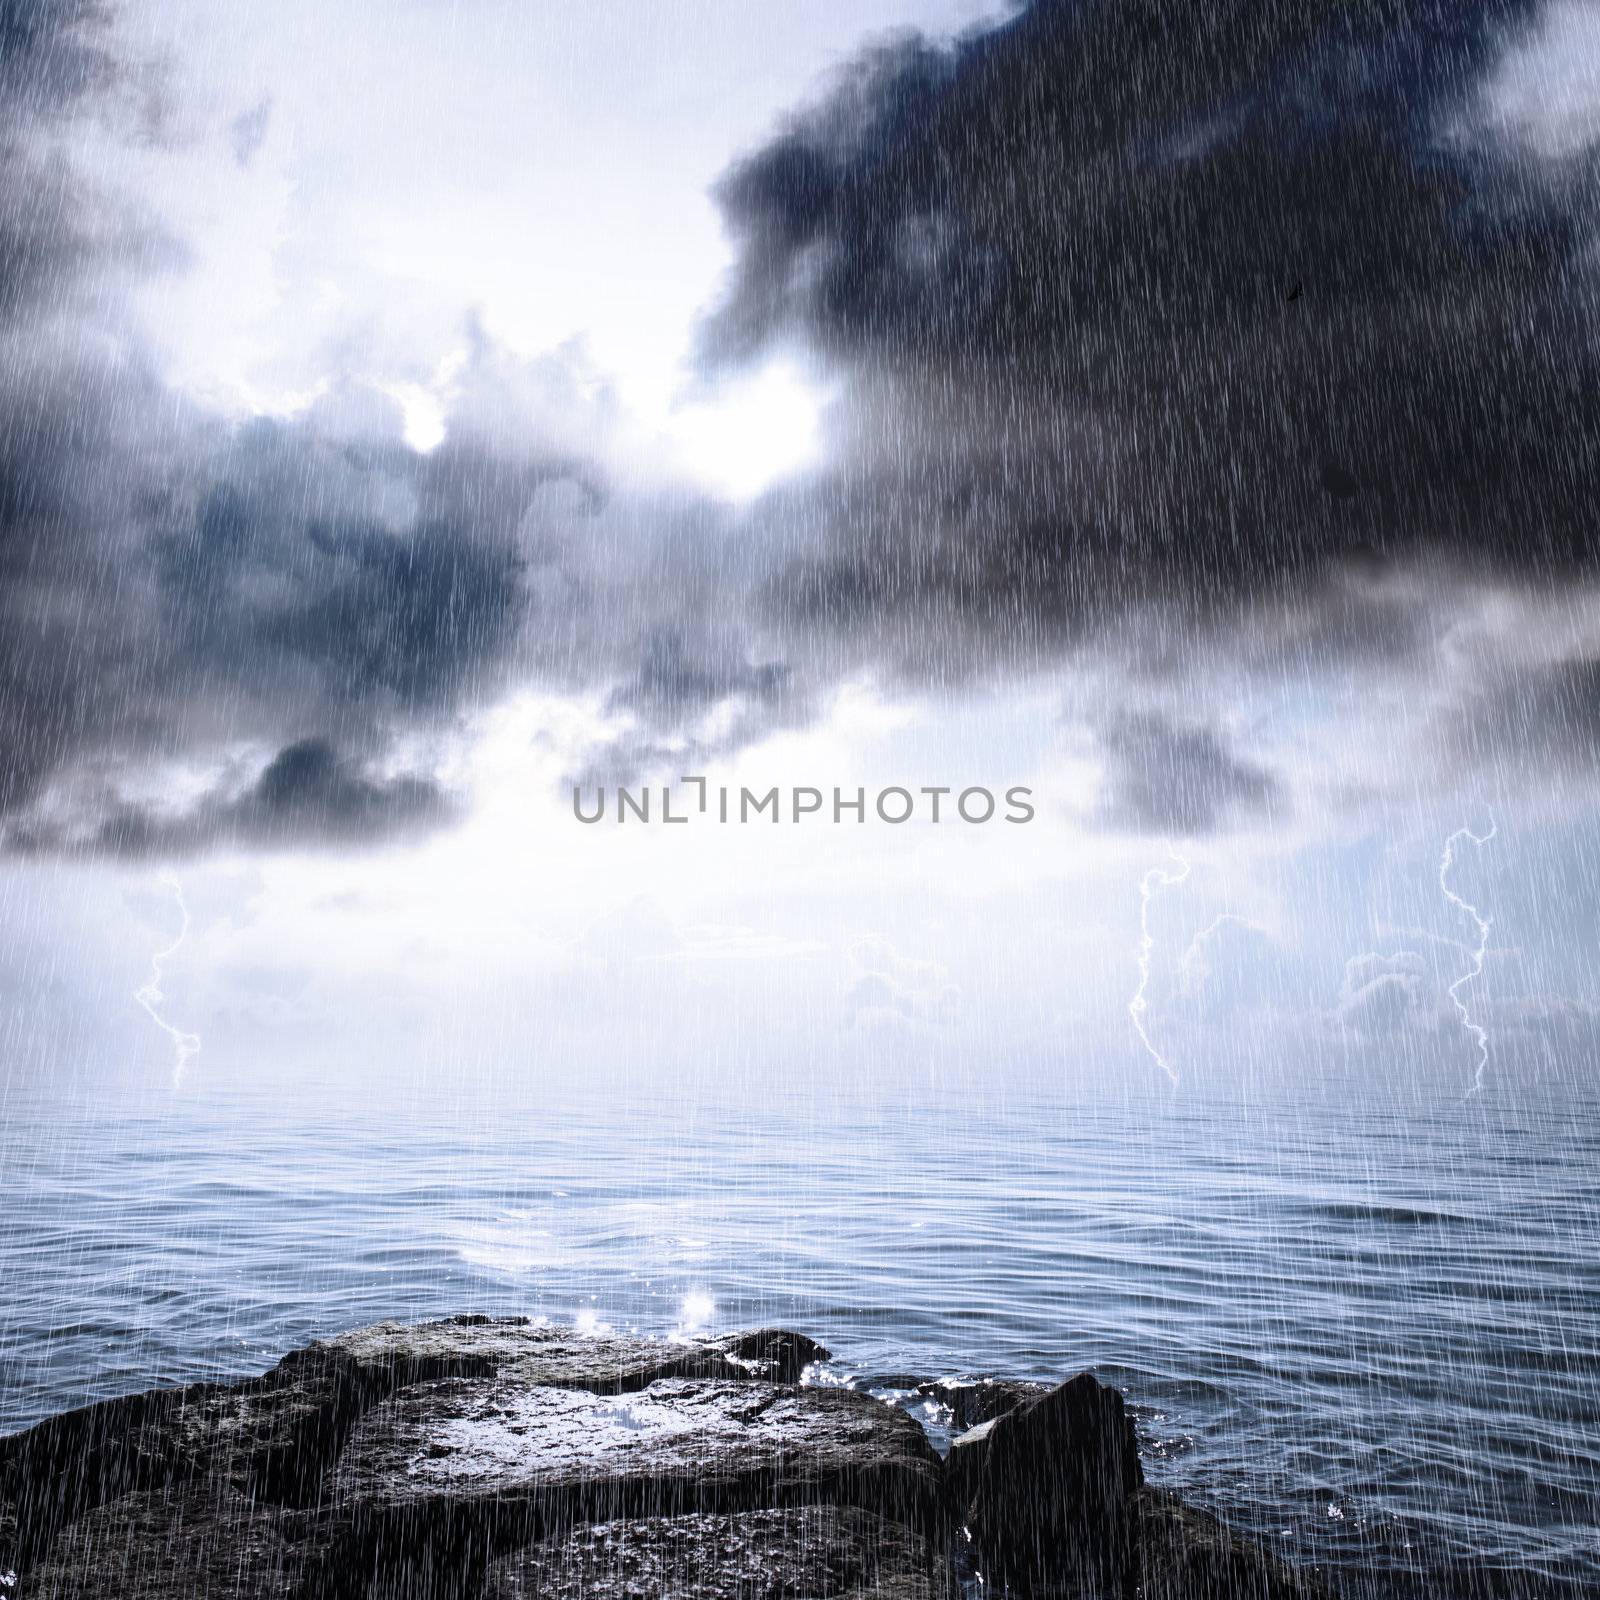 Rain and thunderstorm in the ocean by melpomene